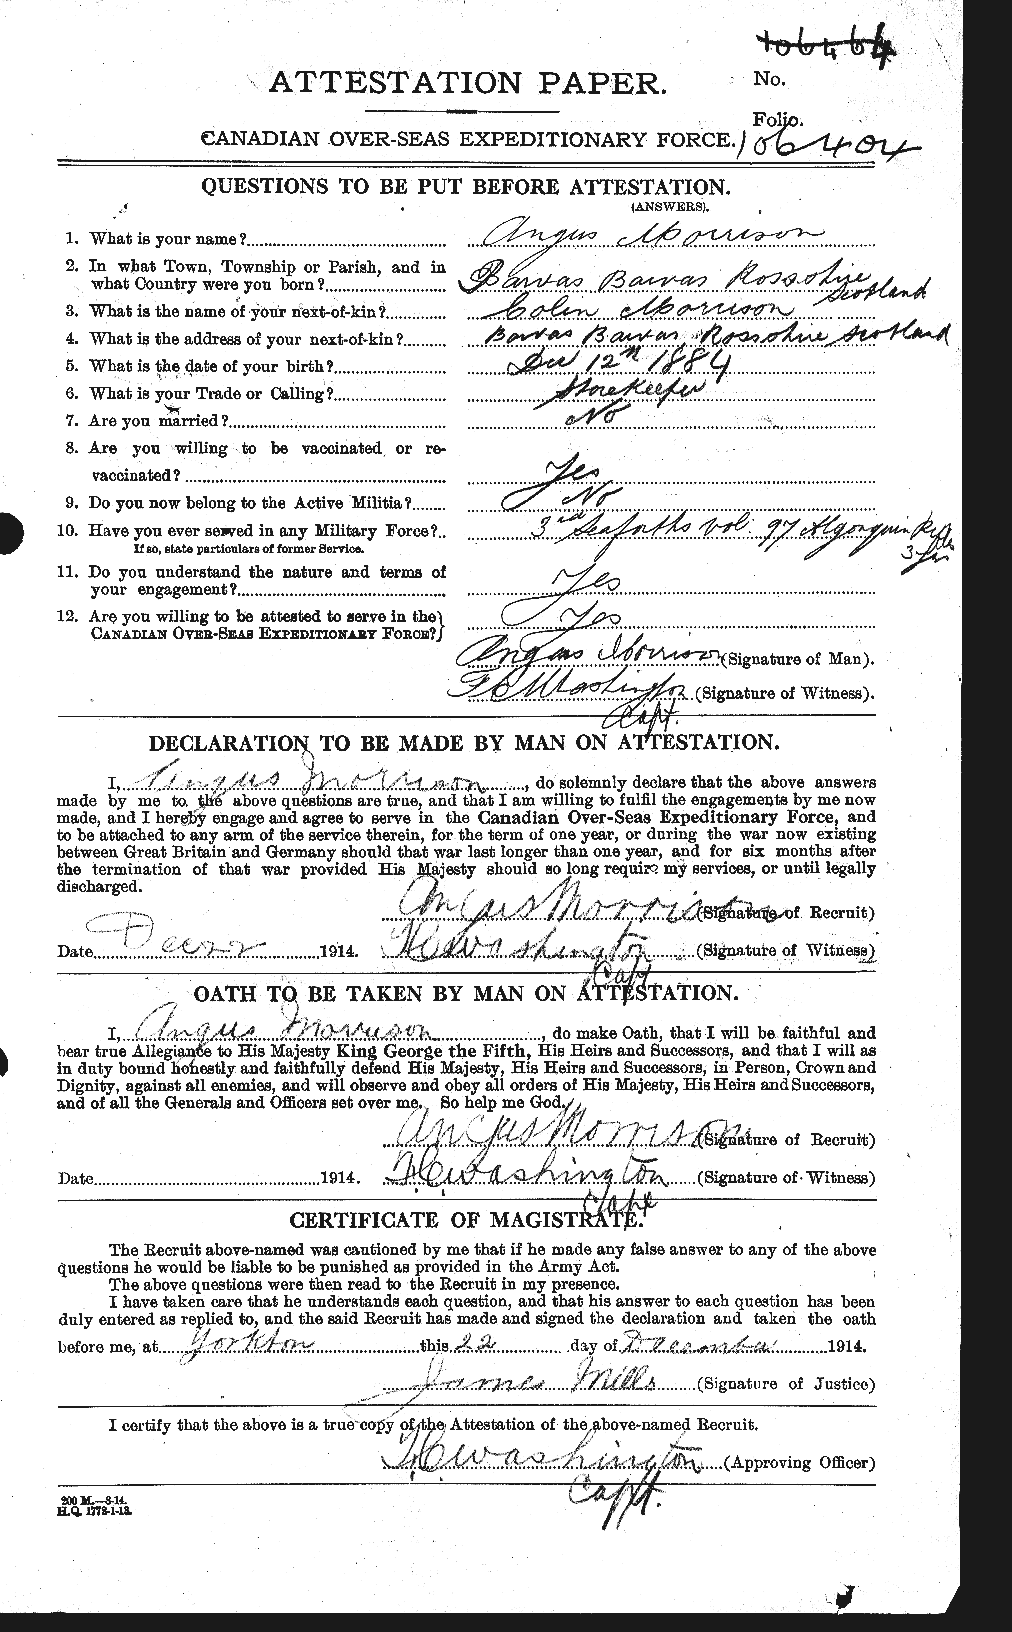 Dossiers du Personnel de la Première Guerre mondiale - CEC 511035a